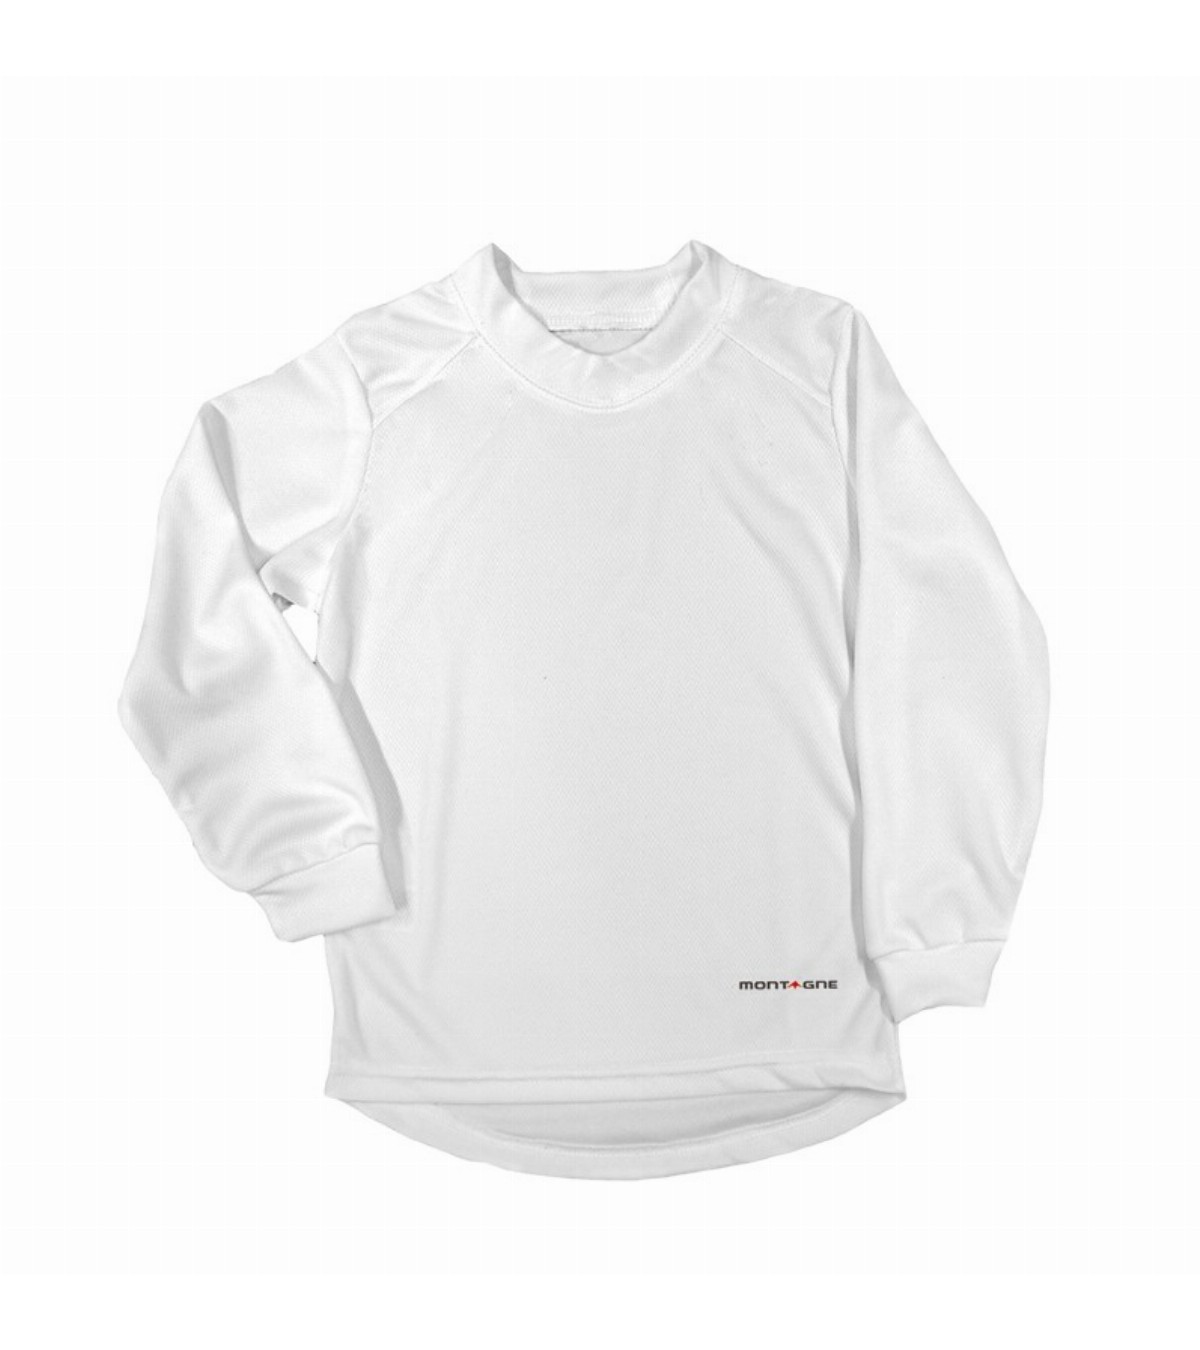 Montagne: camisetas, camiseta, camisetas termicas, camiseta